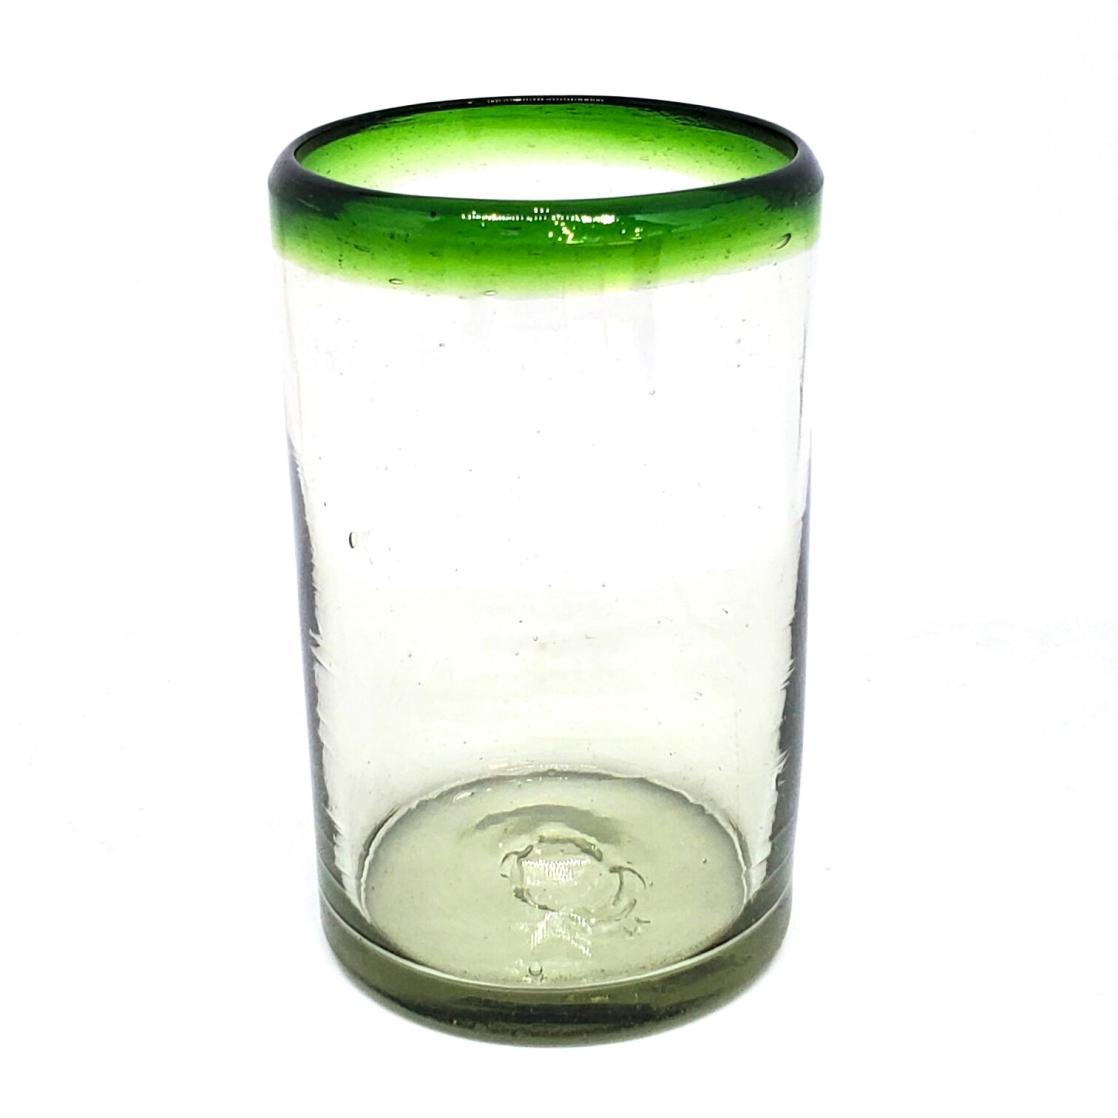 Ofertas / vasos grandes con borde verde esmeralda / Éstos artesanales vasos le darán un toque clásico a su bebida favorita.